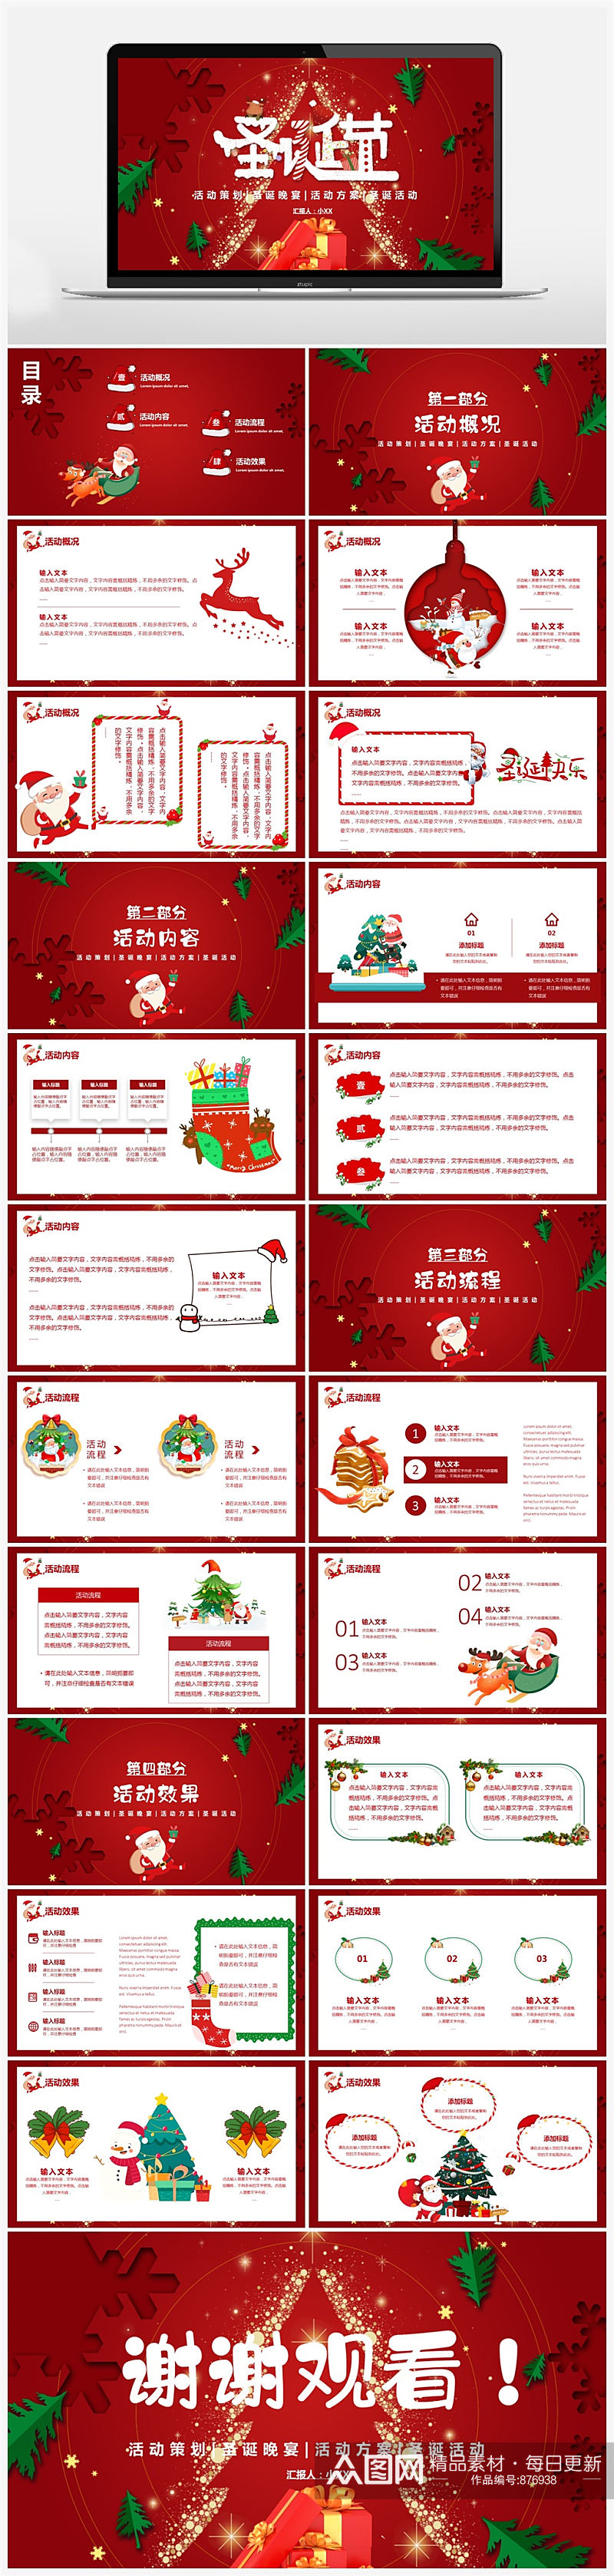 红色卡通剪纸风圣诞节活动策划PPT素材